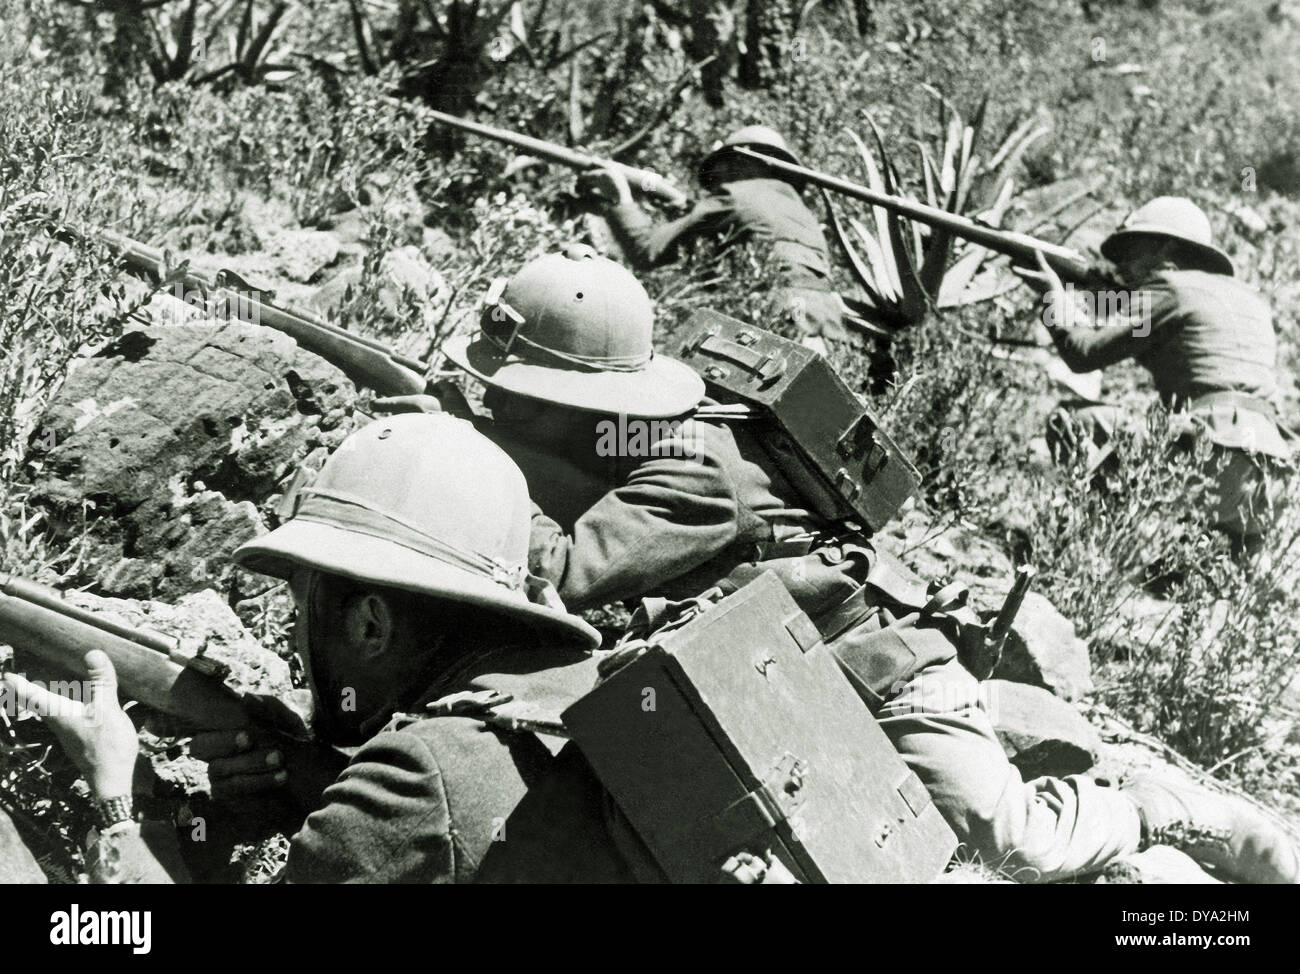 La guerre La guerre éthiopienne italien quatre soldats italiens des fusils militaires bataille attaque la guerre d'Abyssinie italienne 1935 Afrique Ethiopie Banque D'Images